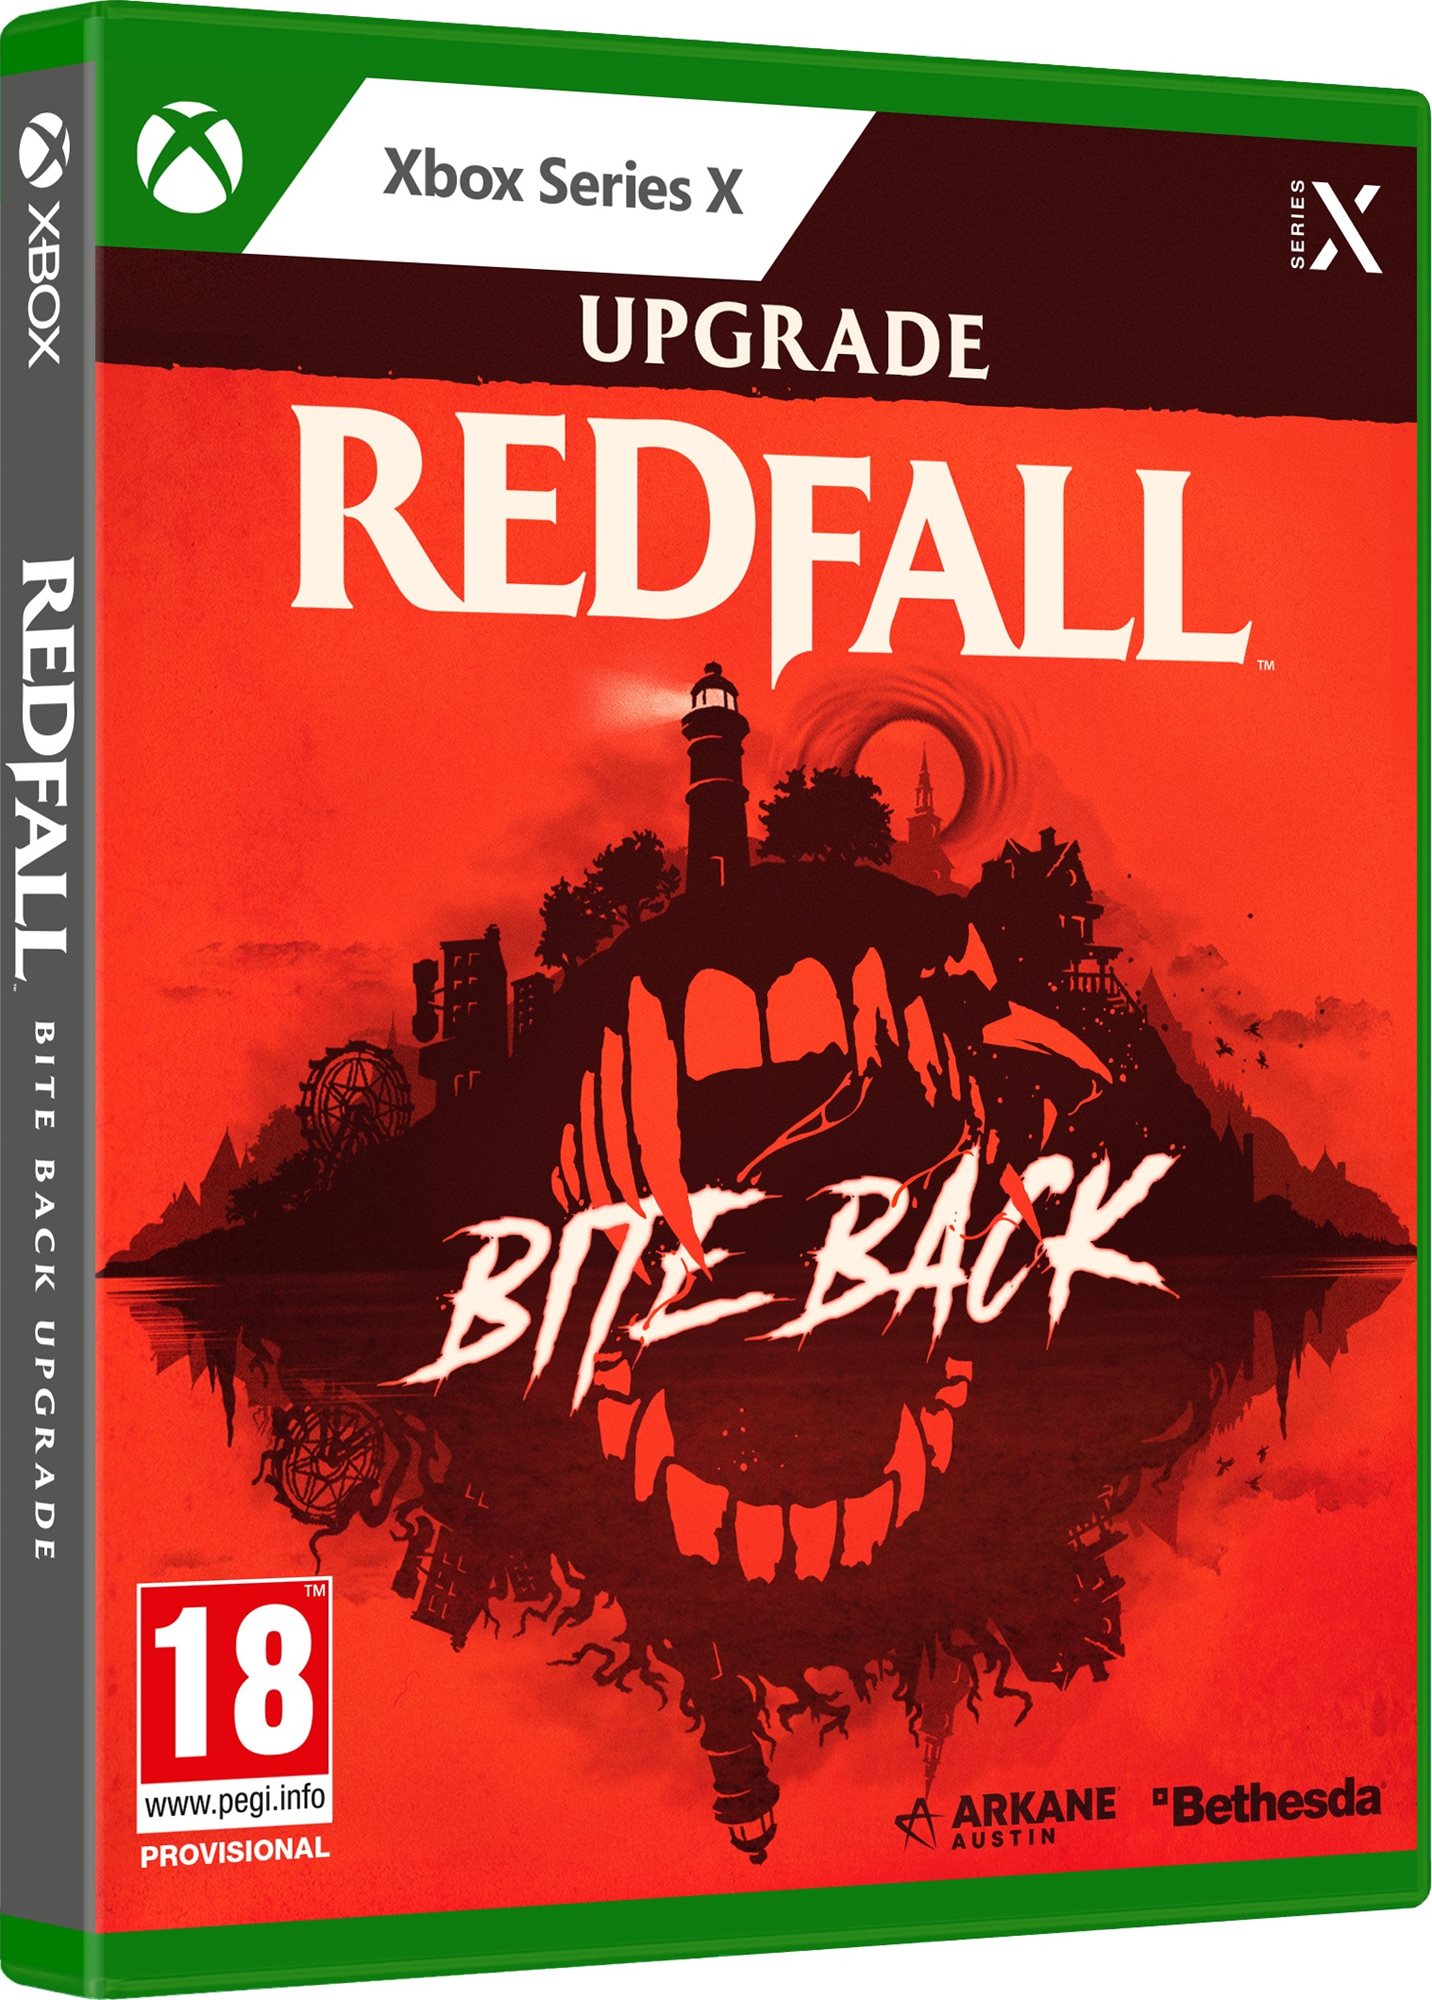 Videójáték kiegészítő Redfall: Bite Back Upgrade - Xbox Series X